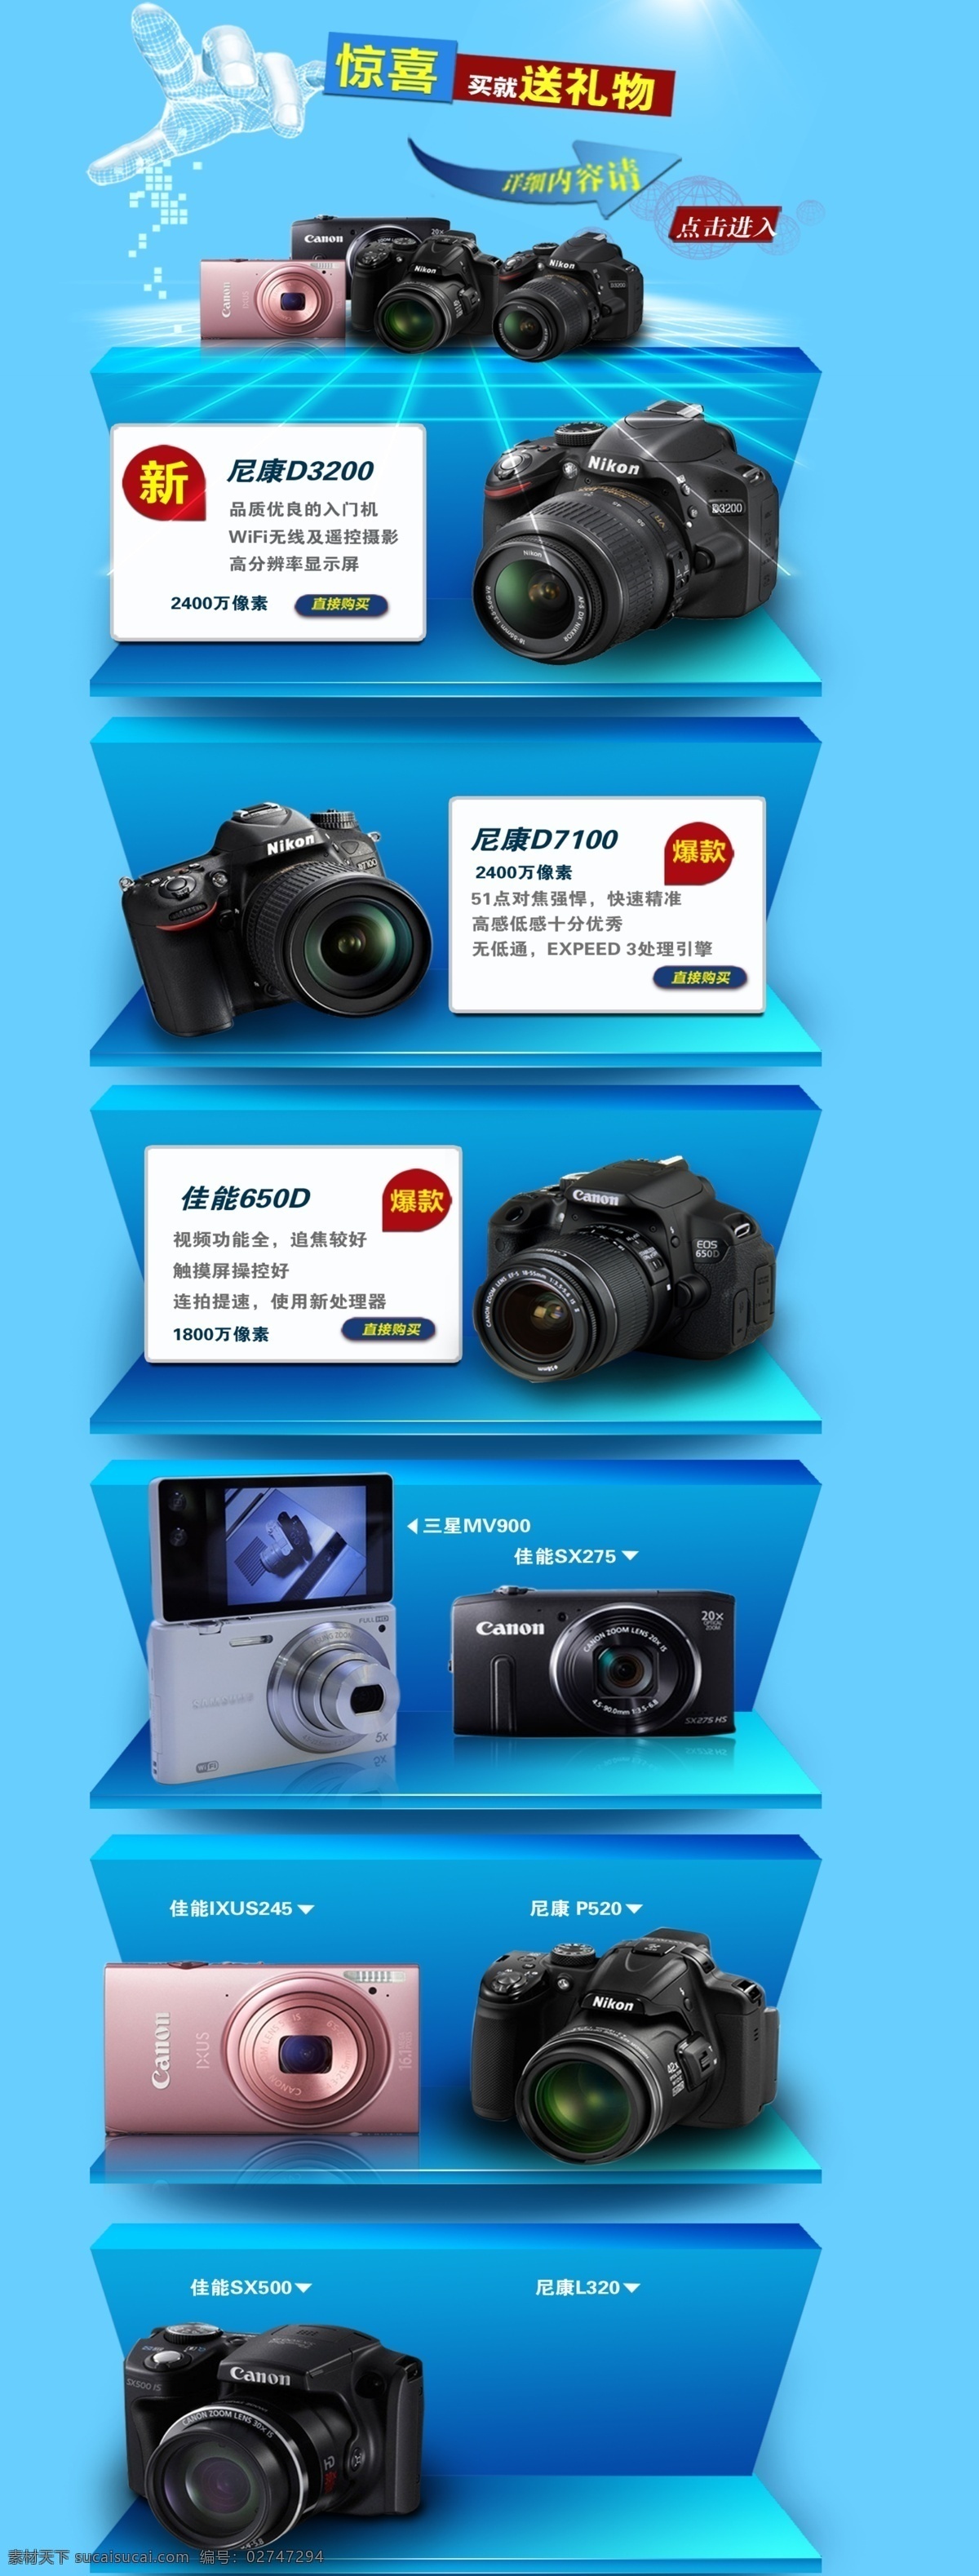 dm宣传单 尼康 网页模板 相机 相机素材 宣传海报 源文件 模板下载 相机宣传海报 海报 中文模板